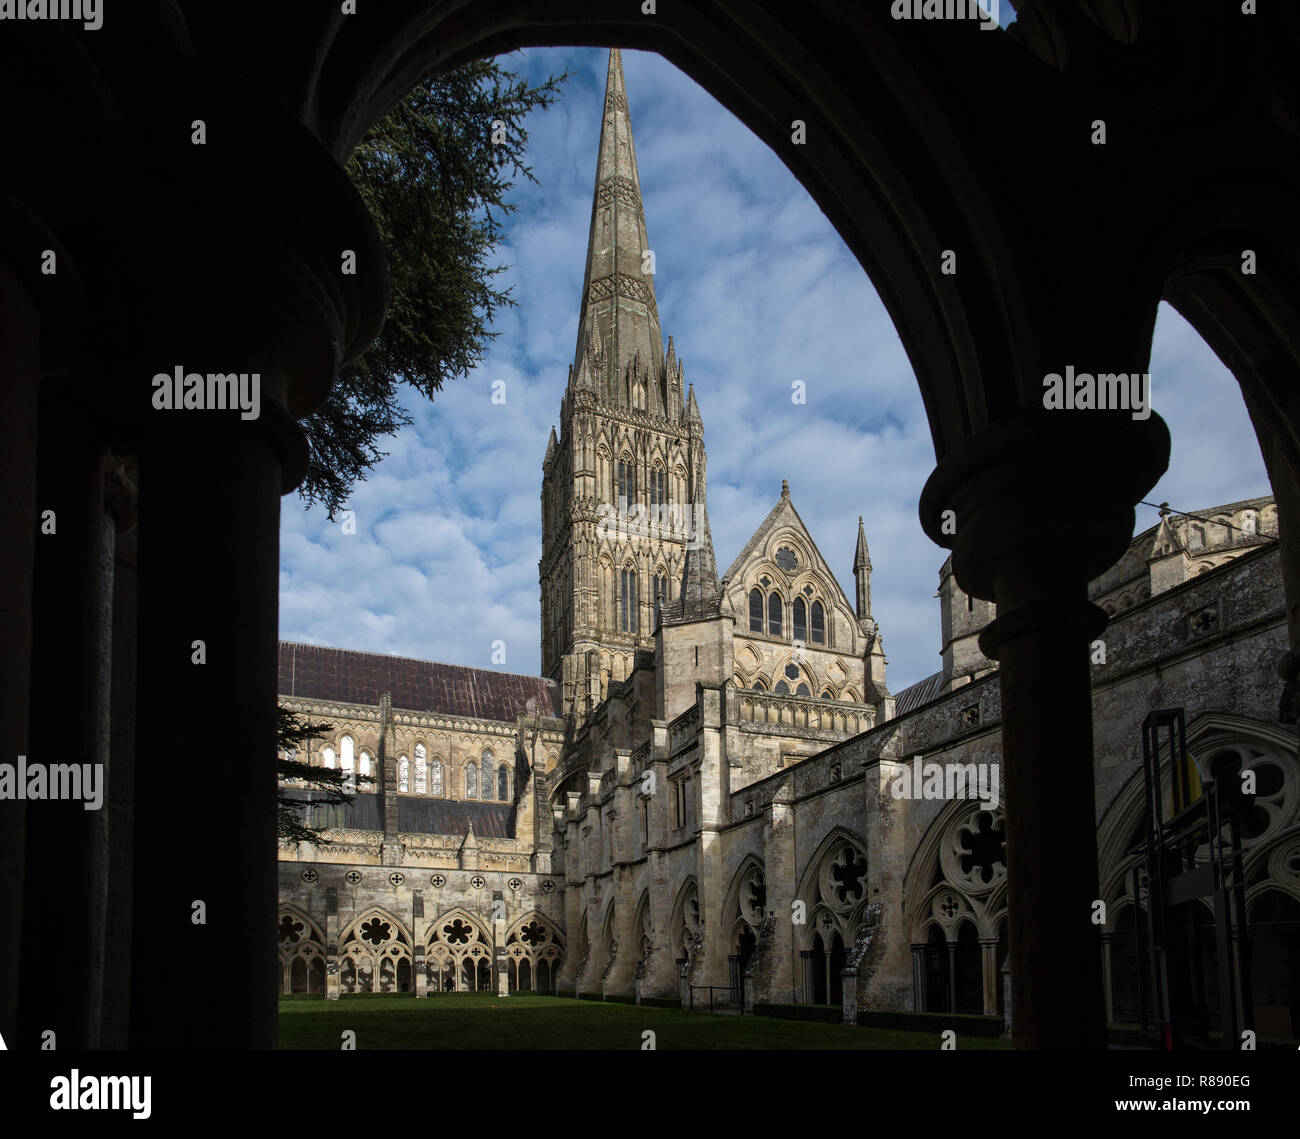 La cathédrale de Salisbury Wiltshire en Angleterre. 11 Dec 2018 La cathédrale de Salisbury, connu officiellement sous le nom de l'église cathédrale de la Bienheureuse Vierge Marie, est un Angli Banque D'Images